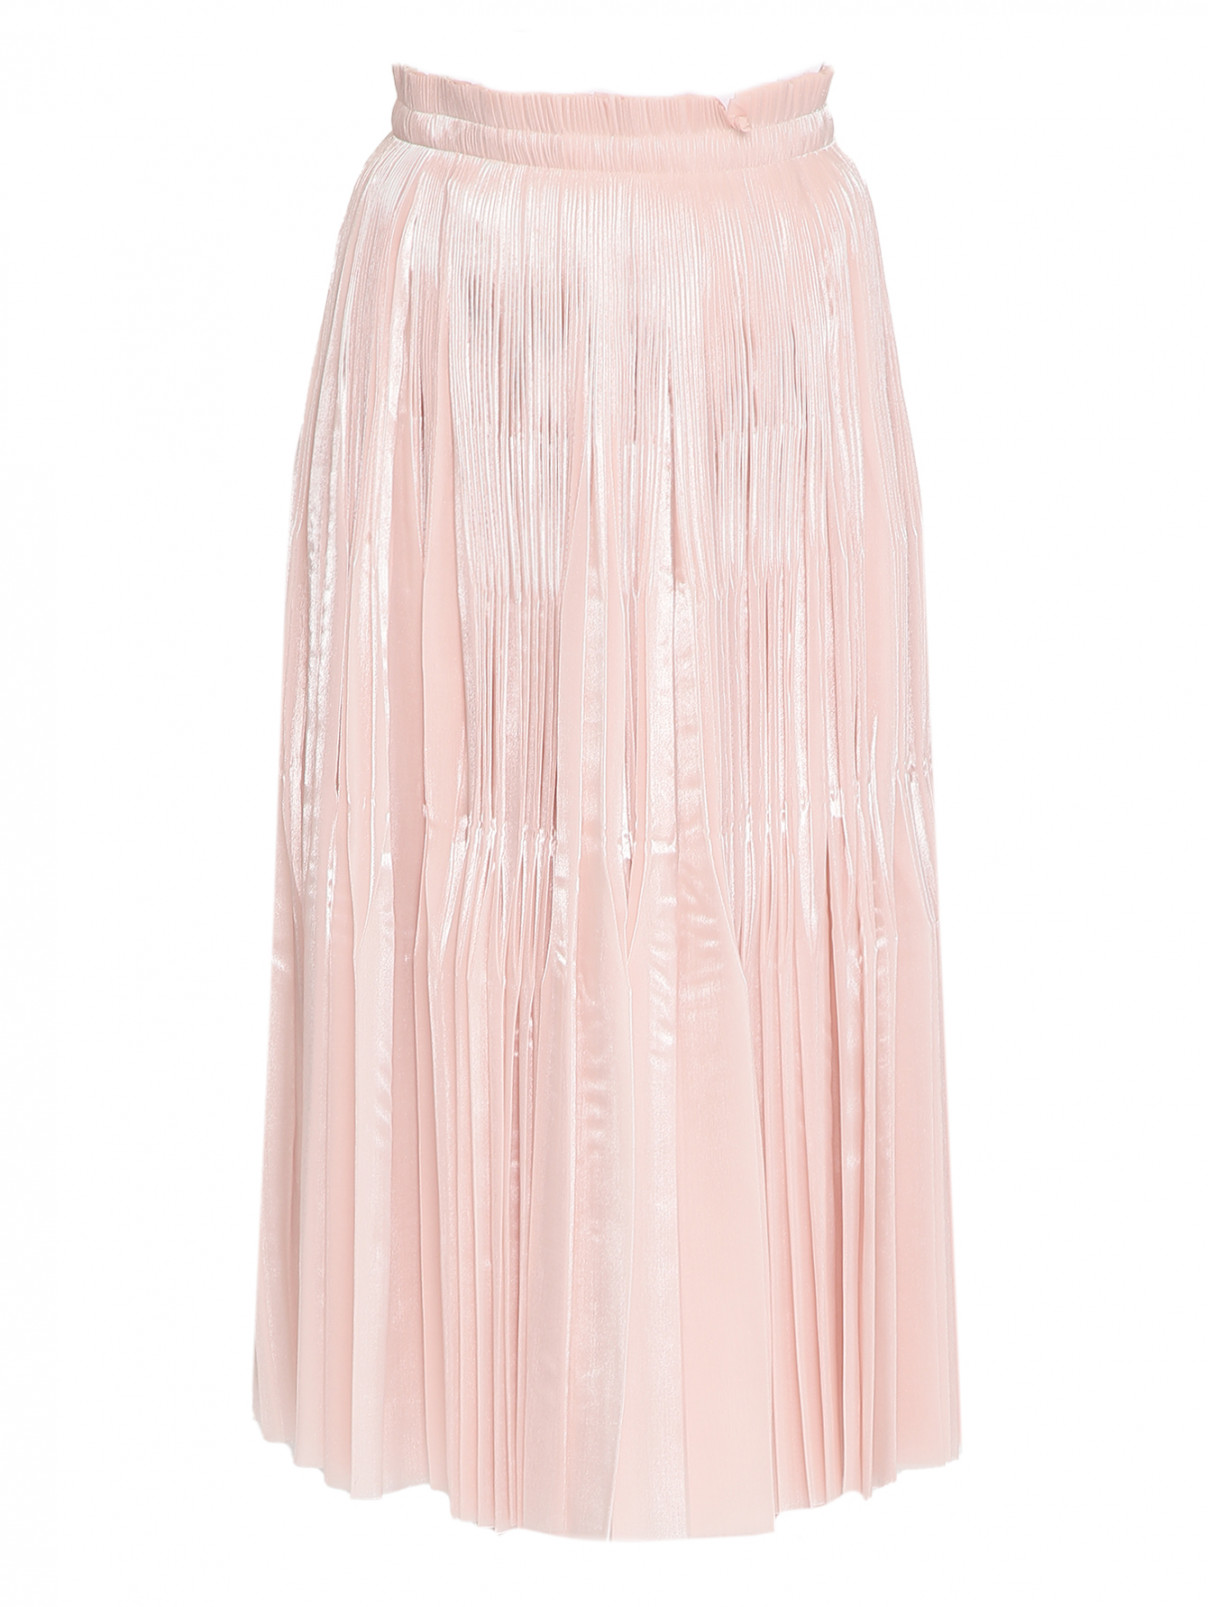 Плиссированная юбка-миди P.A.R.O.S.H.  –  Общий вид  – Цвет:  Розовый